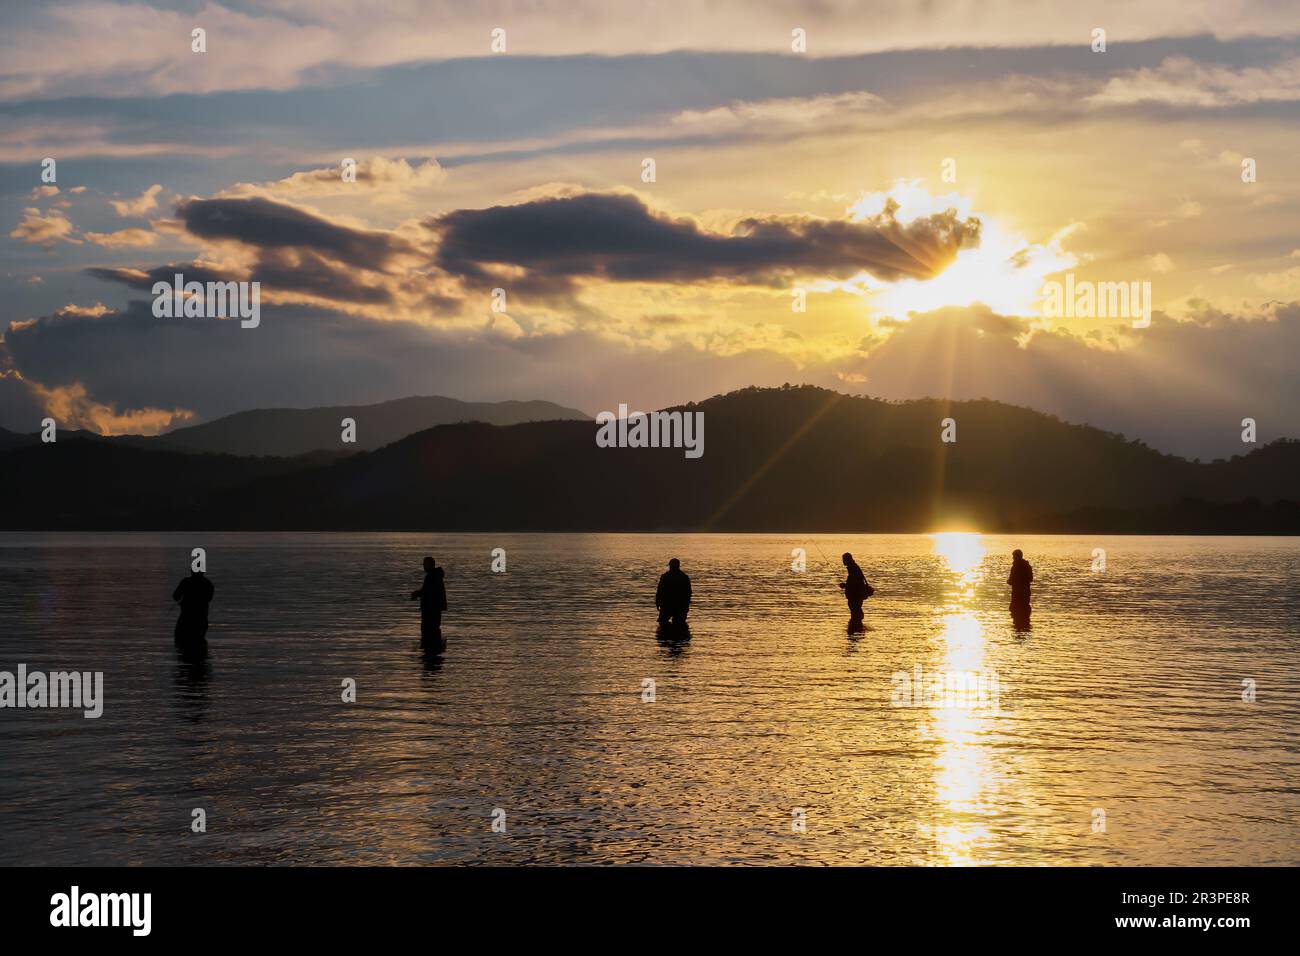 Silhouetten von Fischern vor dem Hintergrund der untergehenden Sonne, Wolken und Silhouetten von Bergen, selektiver Fokus, Idee für einen Hintergrund oder eine Wal Stockfoto